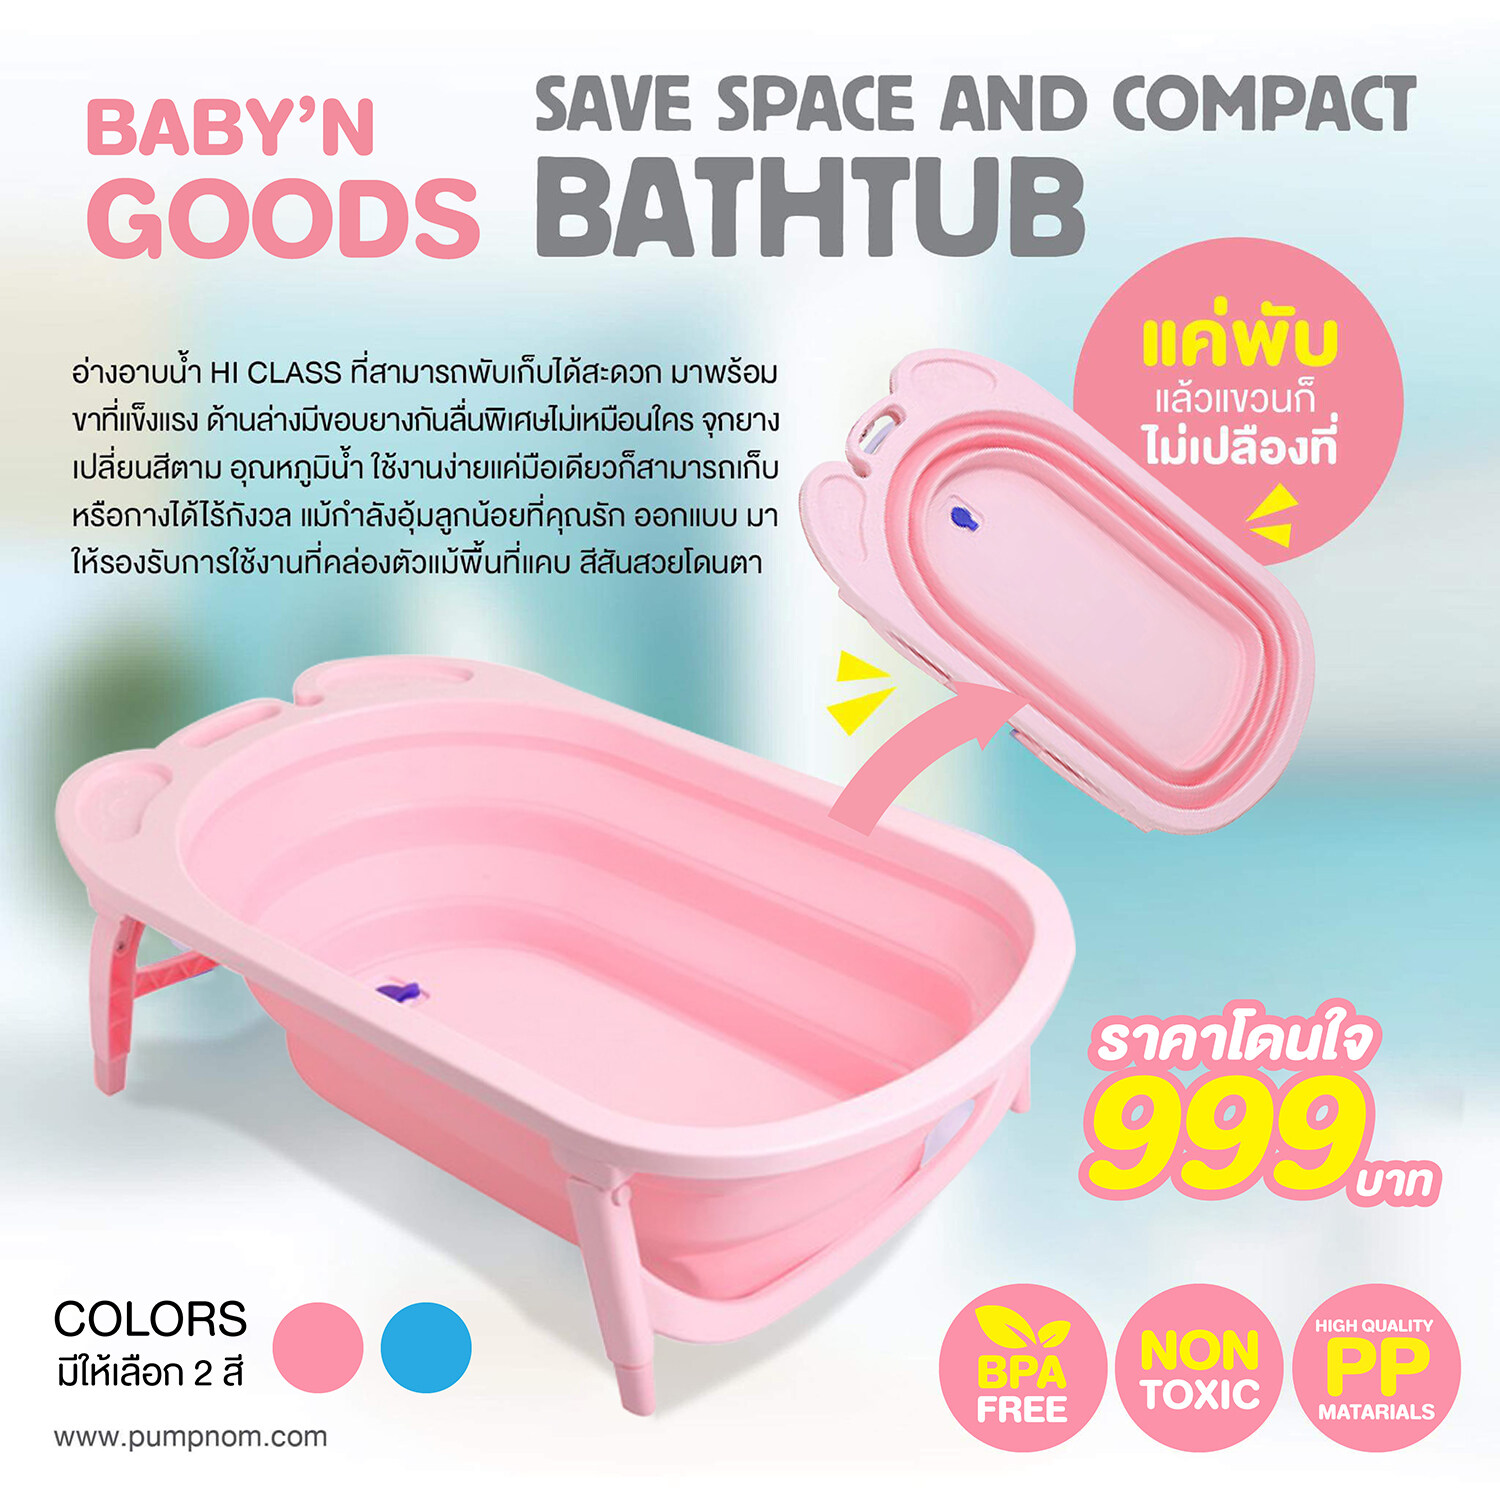 แนะนำ BABY’N GOODS อ่างอาบน้ำอเนกประสงค์พับได้